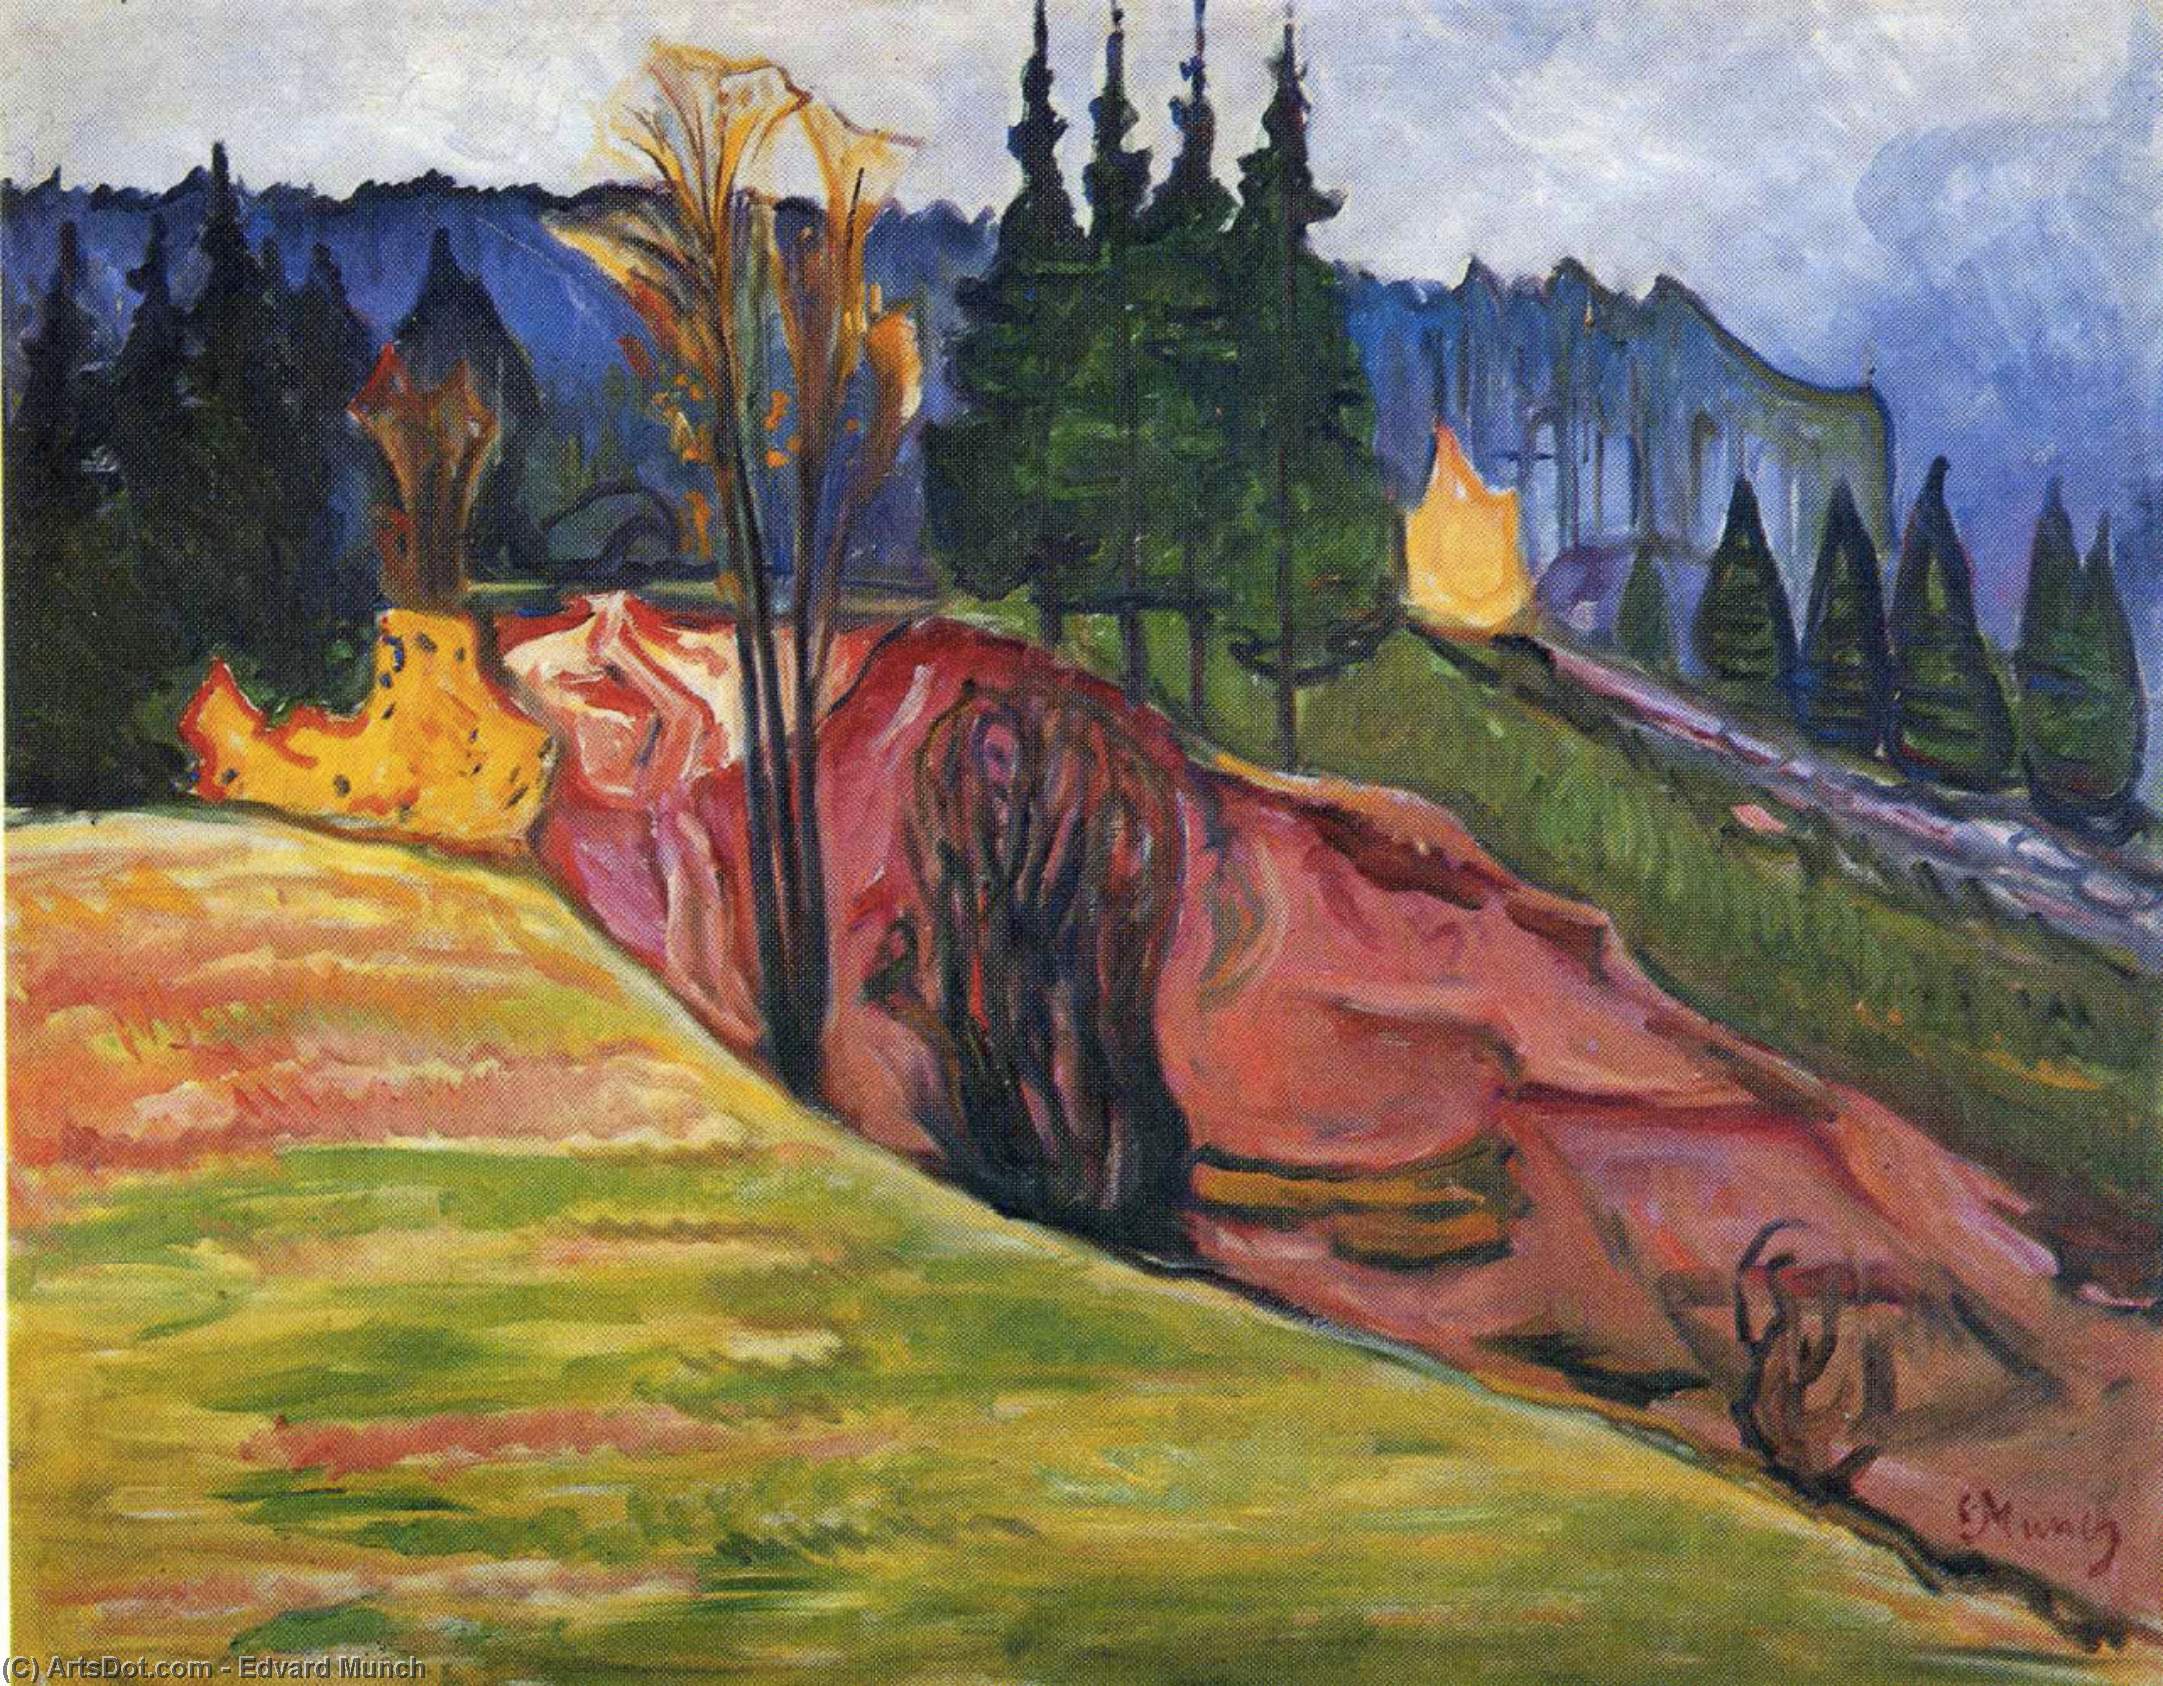 WikiOO.org - Εγκυκλοπαίδεια Καλών Τεχνών - Ζωγραφική, έργα τέχνης Edvard Munch - From Thuringewald